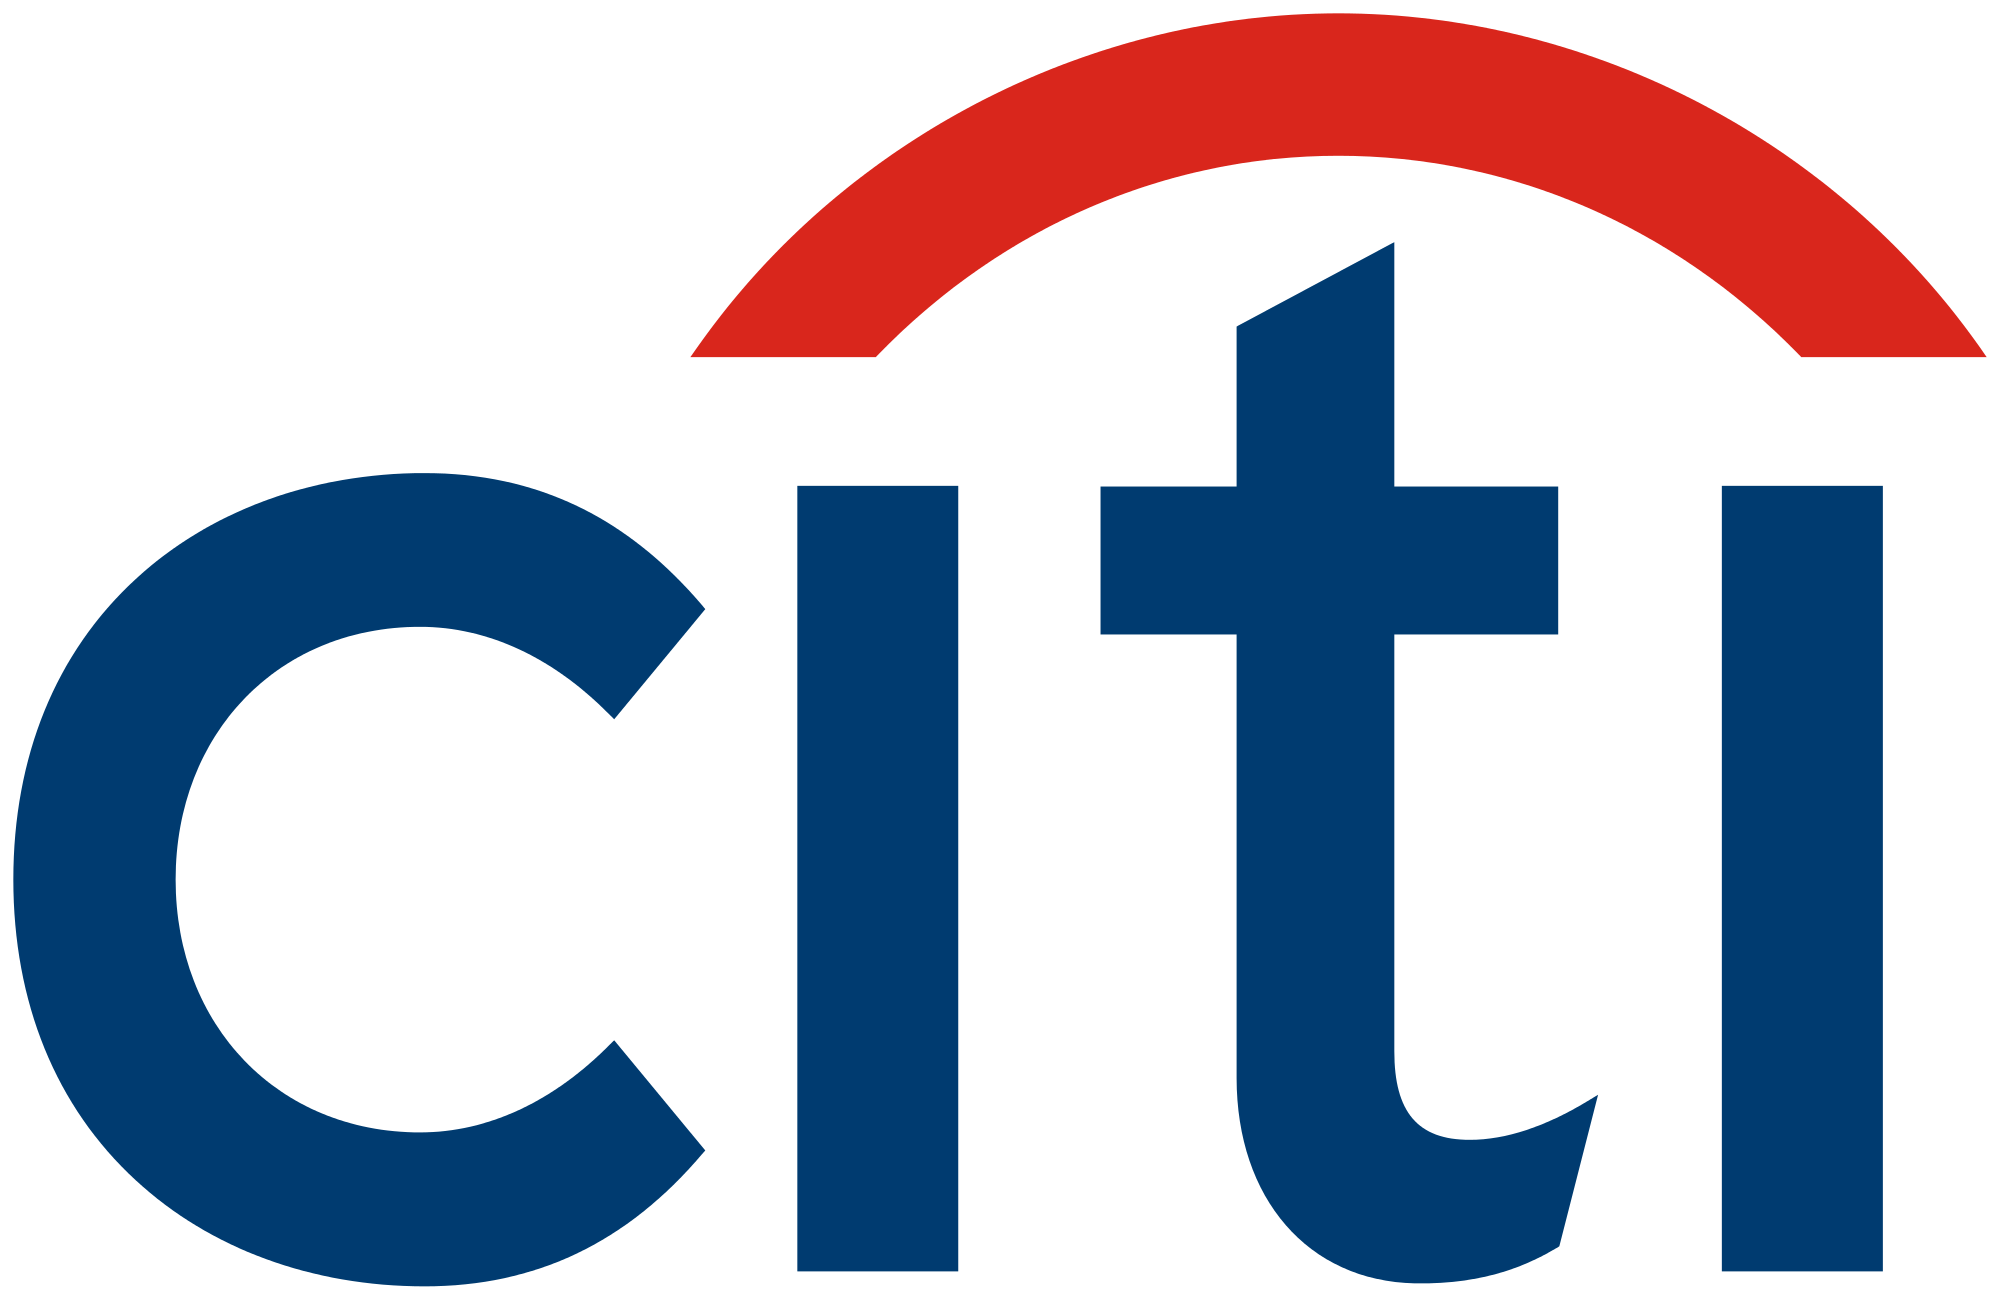 https://warrenenskat.com/wp-content/uploads/2019/01/Logo-Citi.png